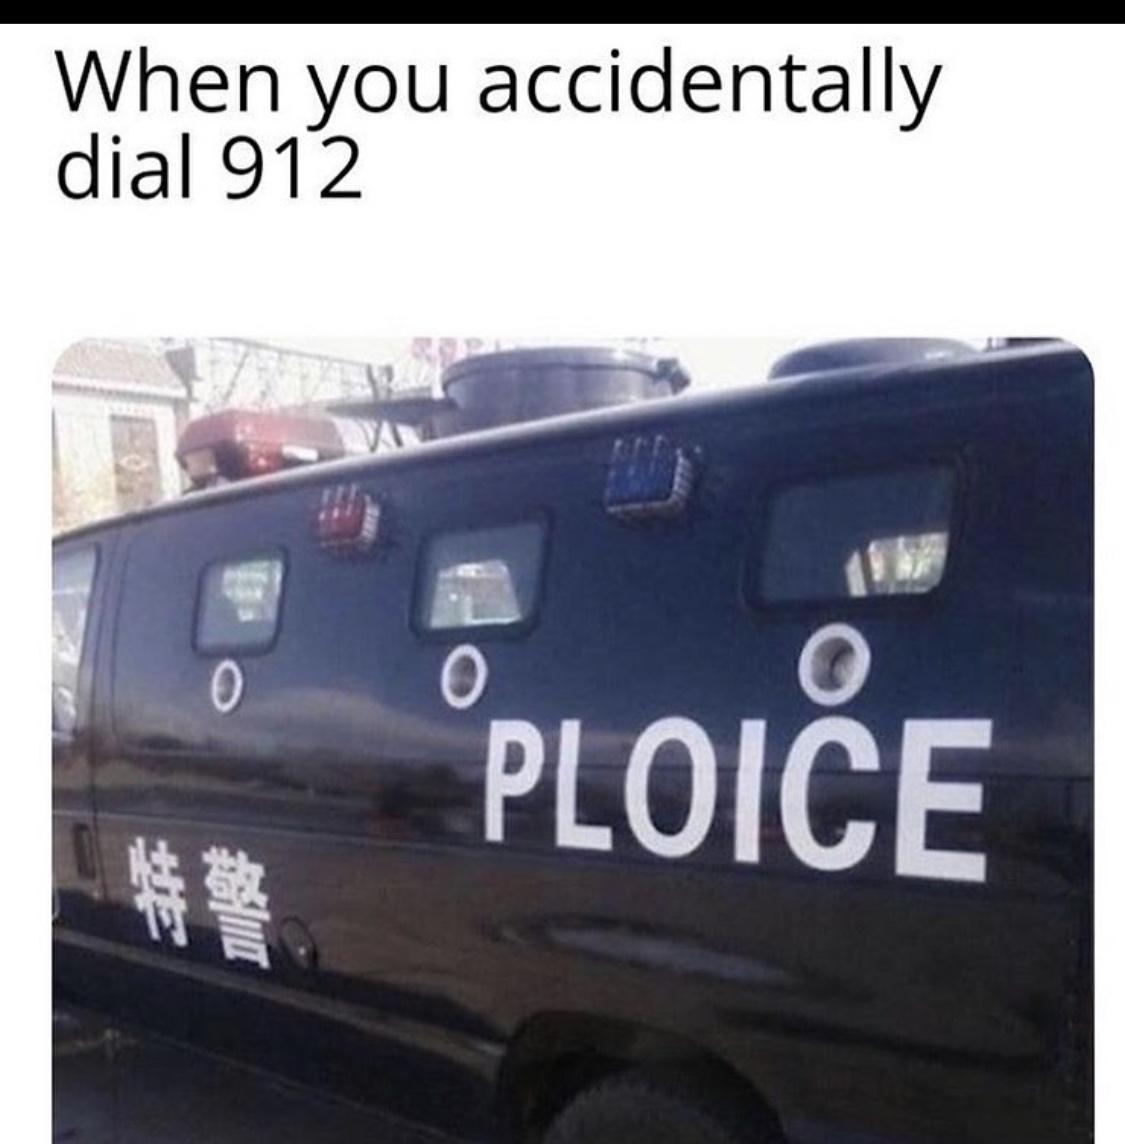 ploice meme - When you accidentally dial 912 Ploice Co